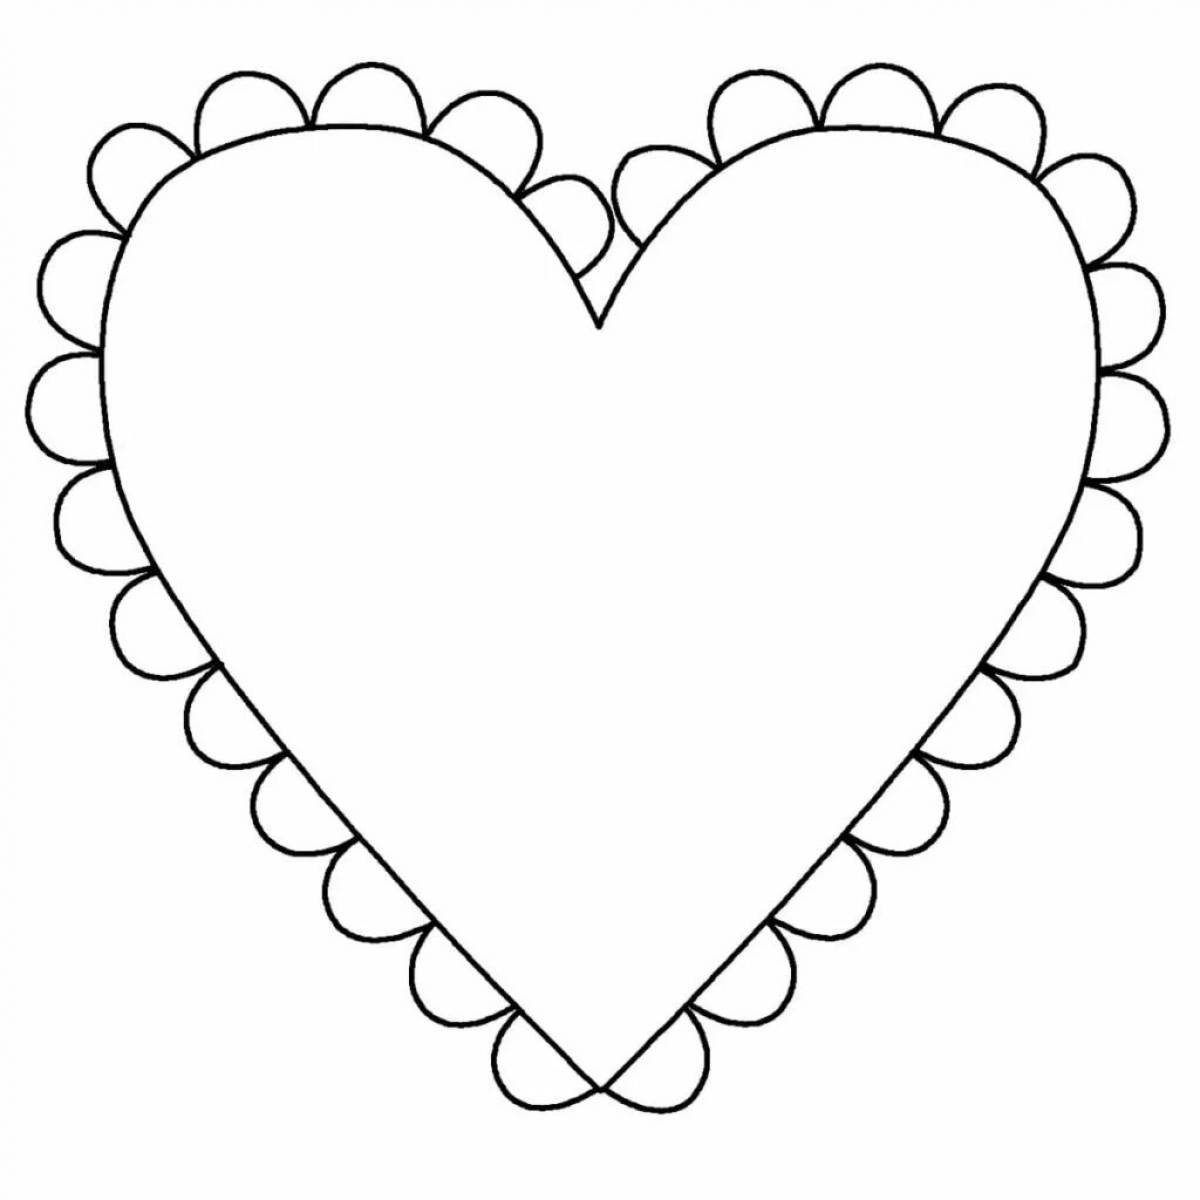 Heart card #1